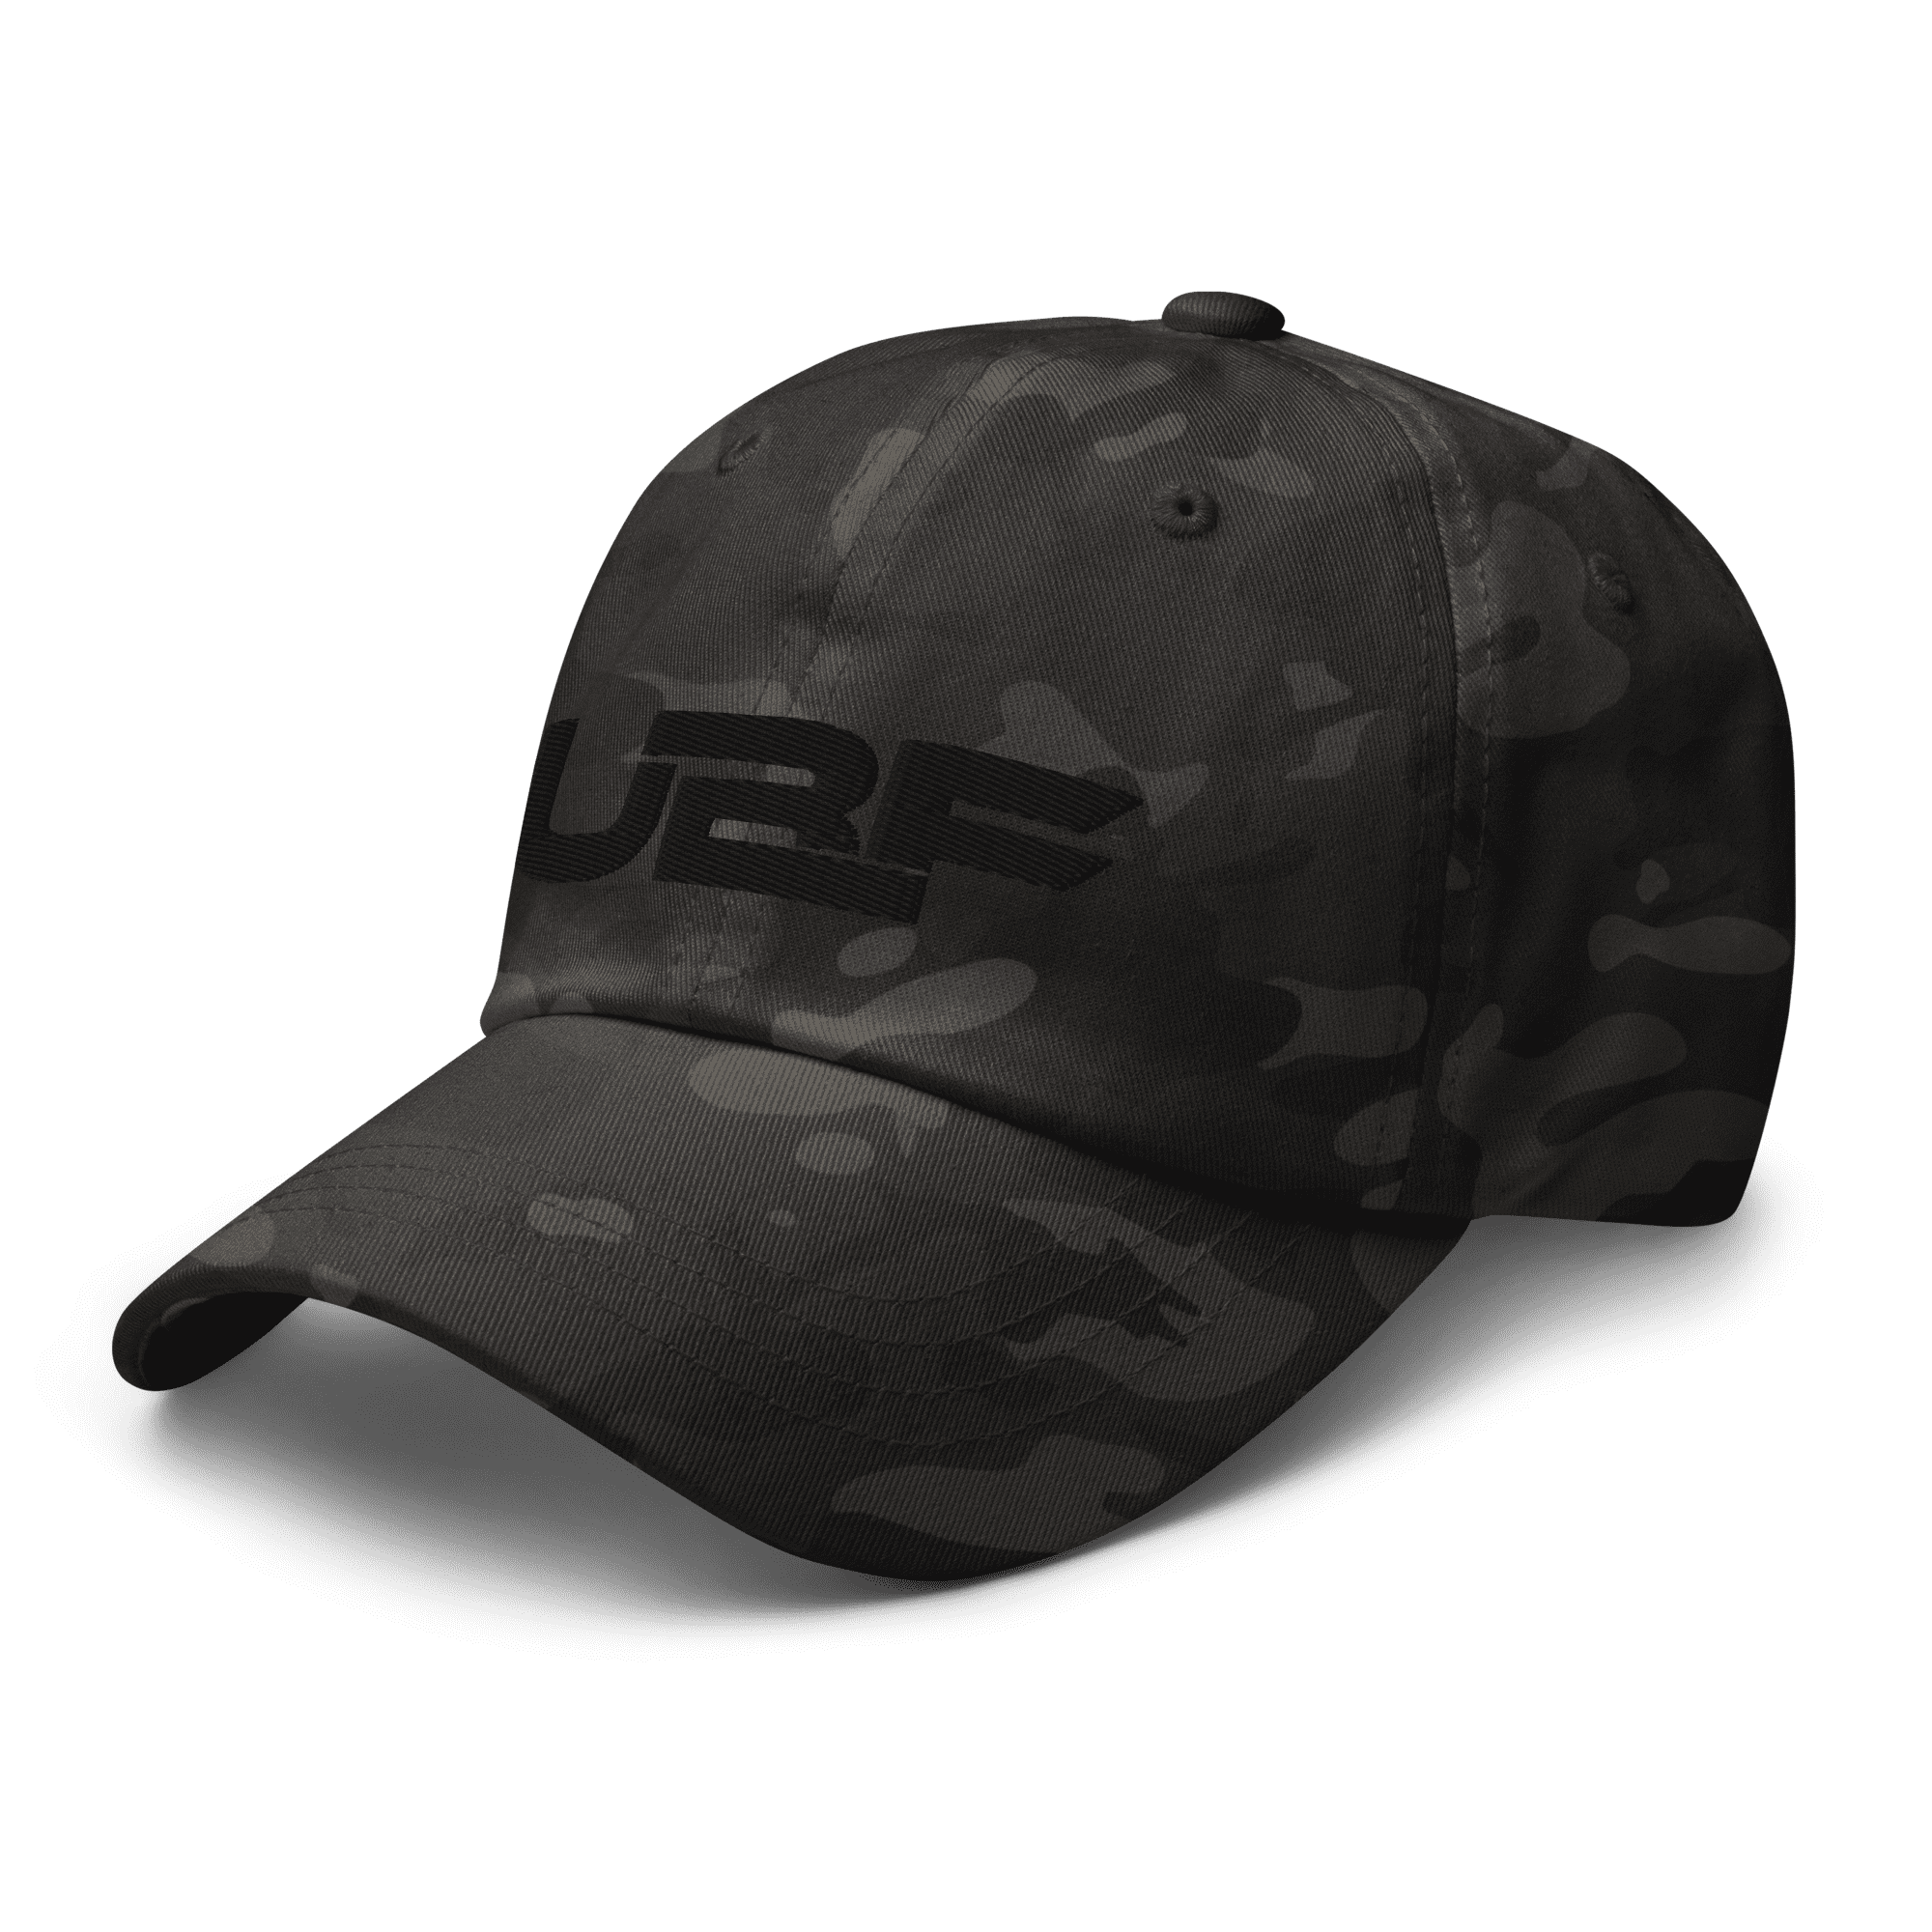 Black UBF Multicam dad hat